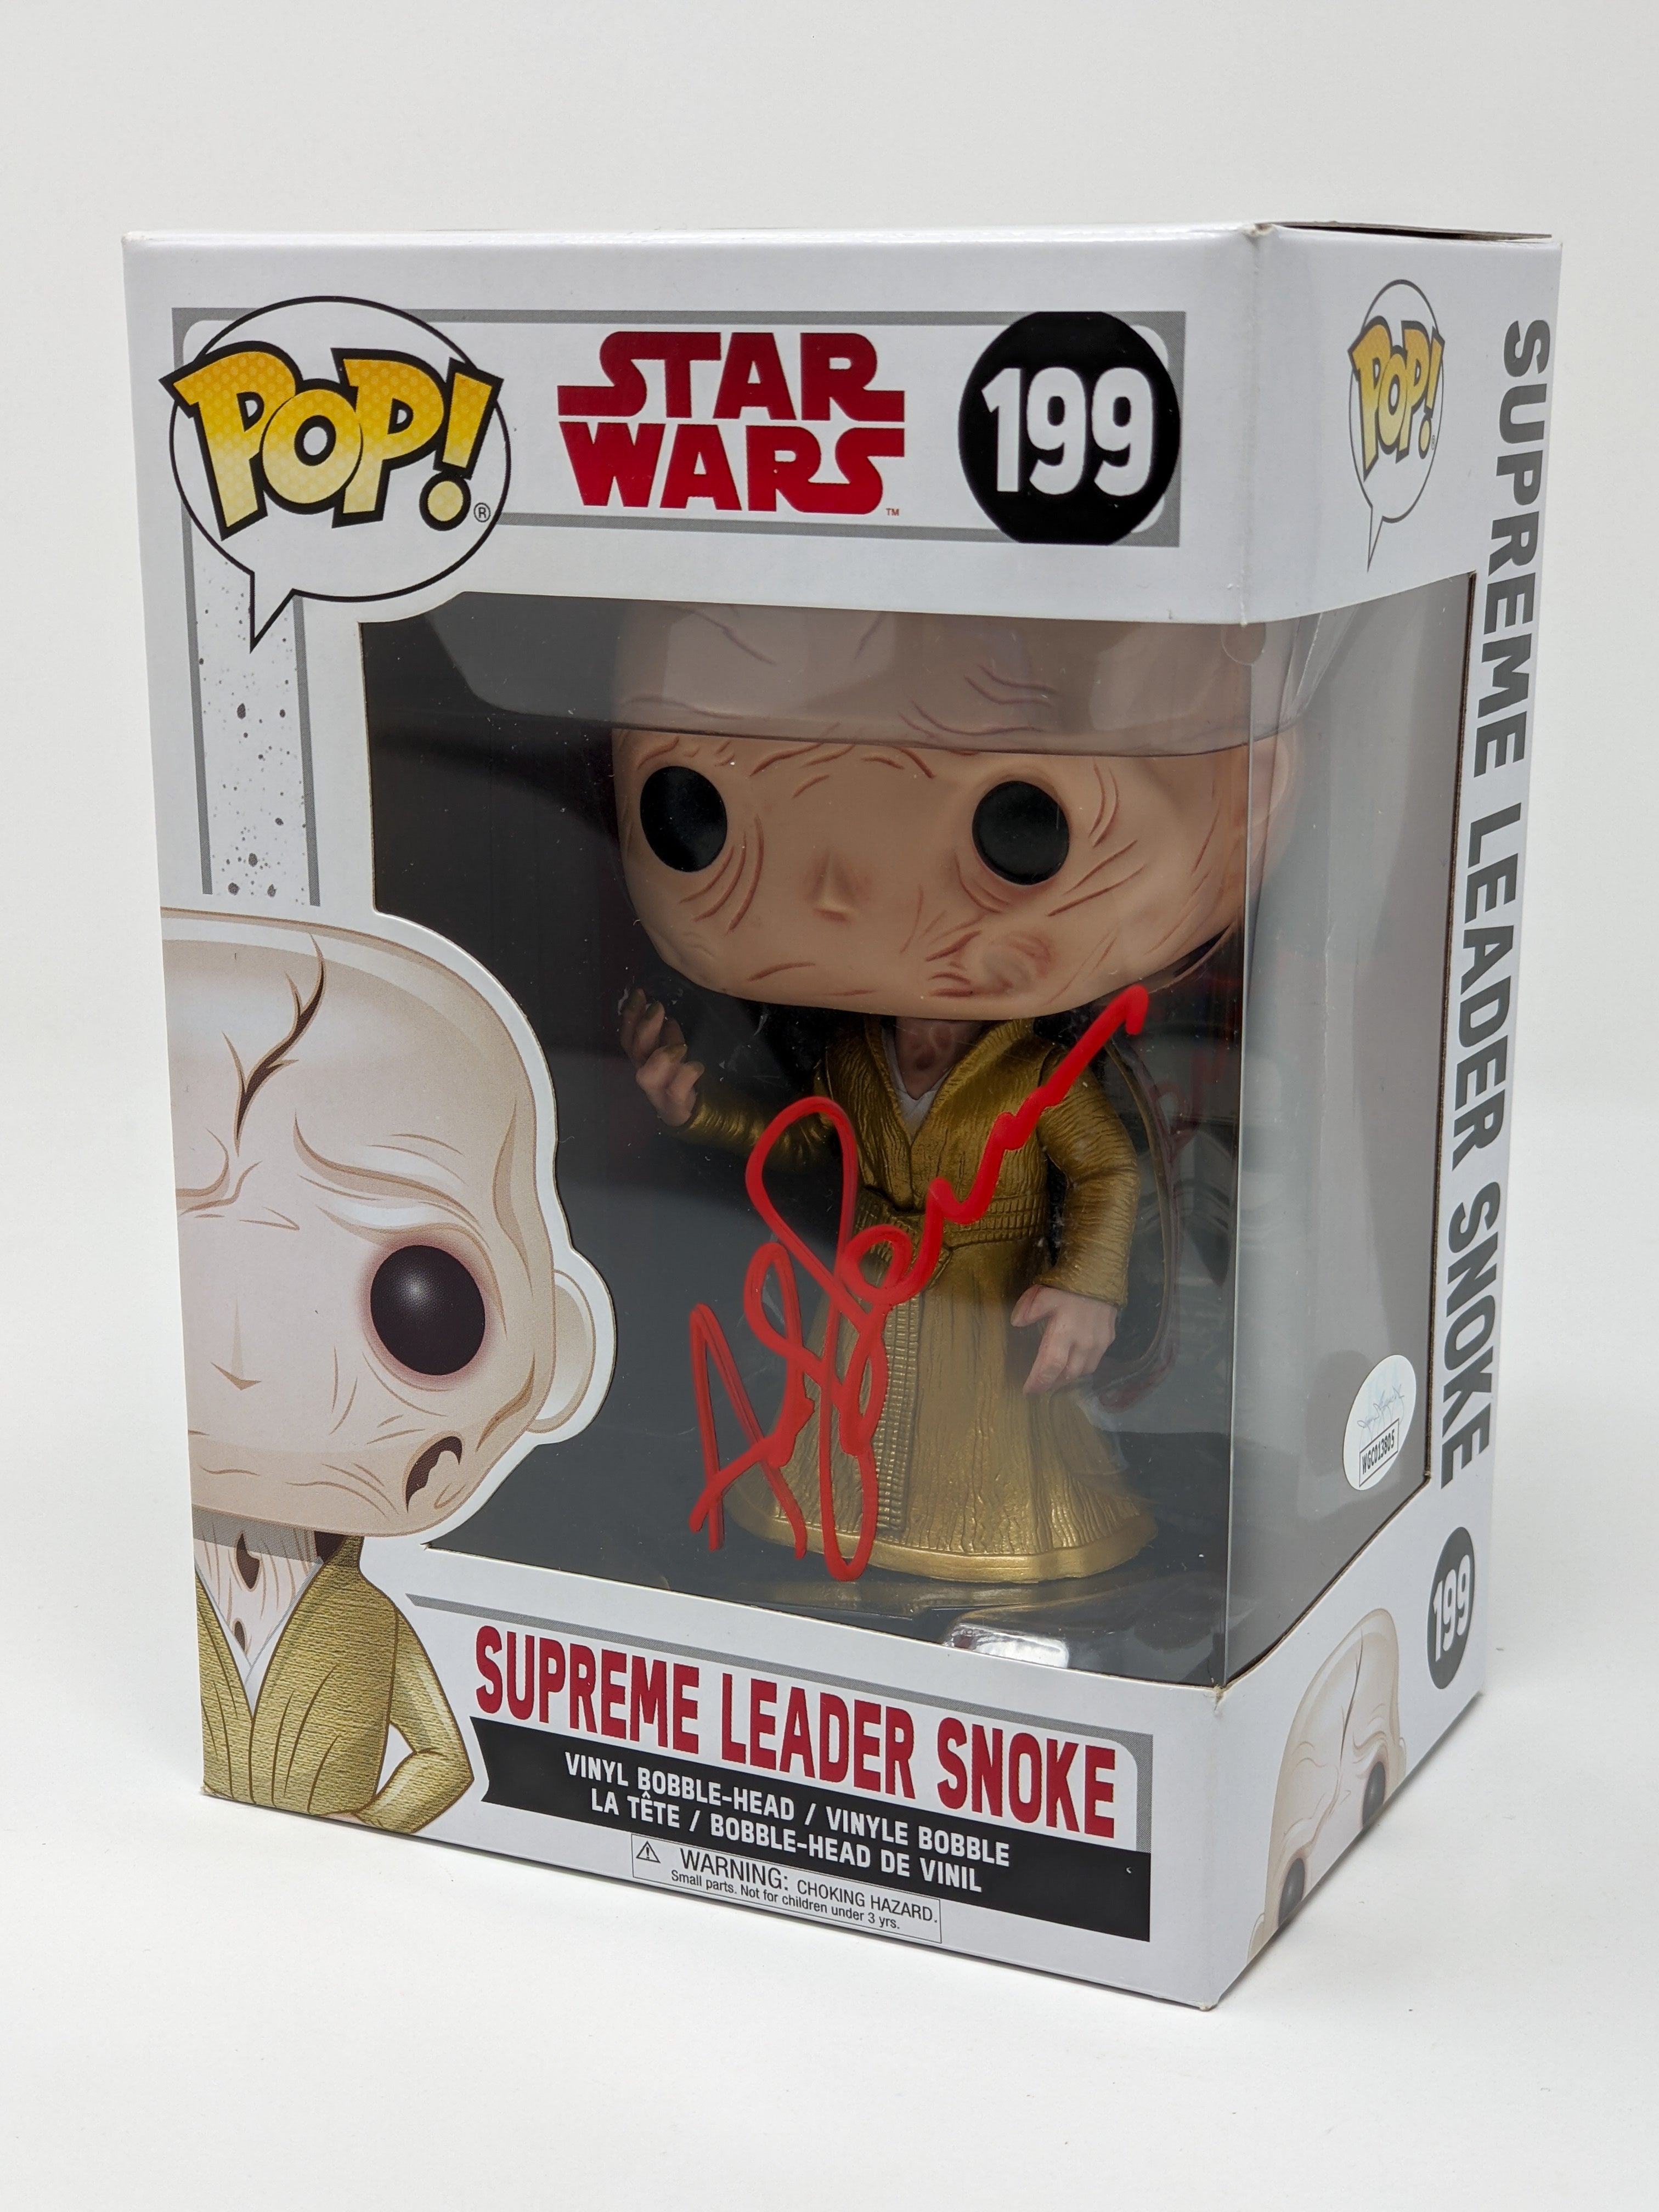 Andy Serkis Star Wars Supreme Leader Snoke #199 Signed Funko Pop JSA Certified Autograph